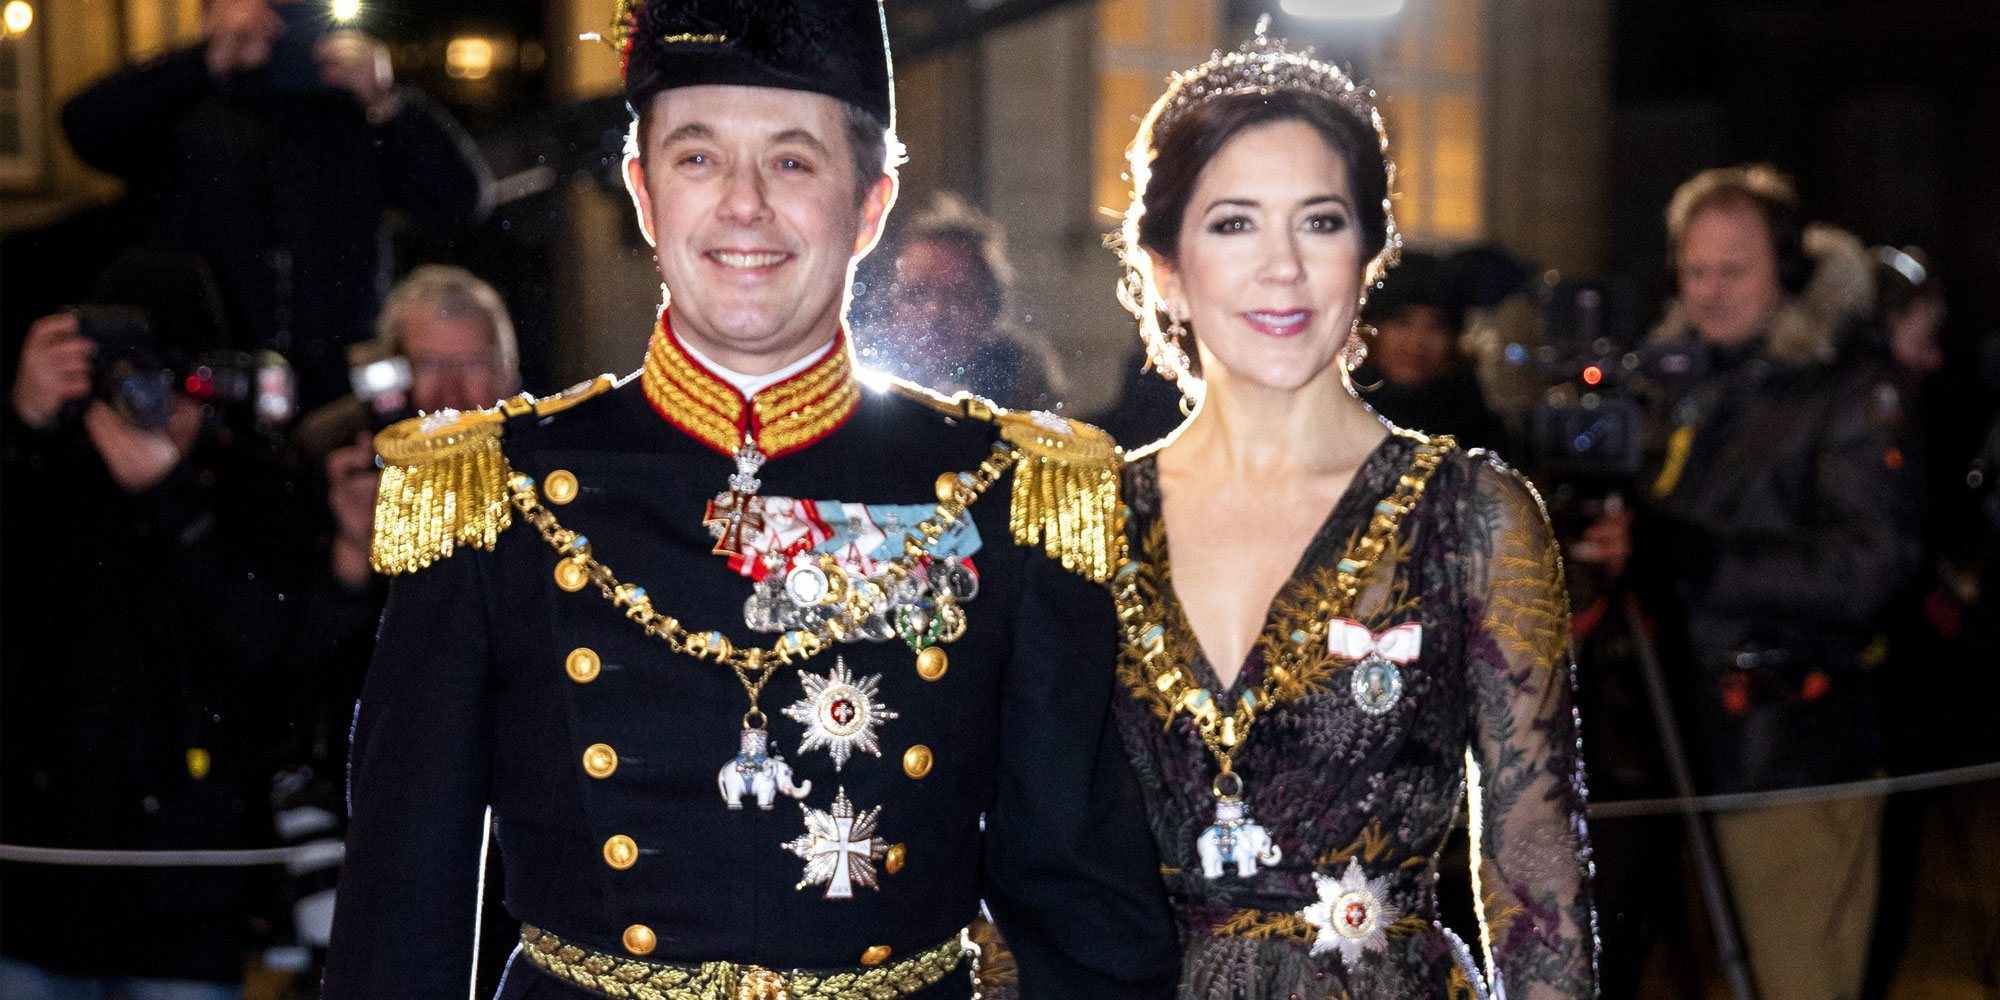 Sonrisas, elegancia y tiaras: así fue la recepción de Año Nuevo de la Familia Real Danesa